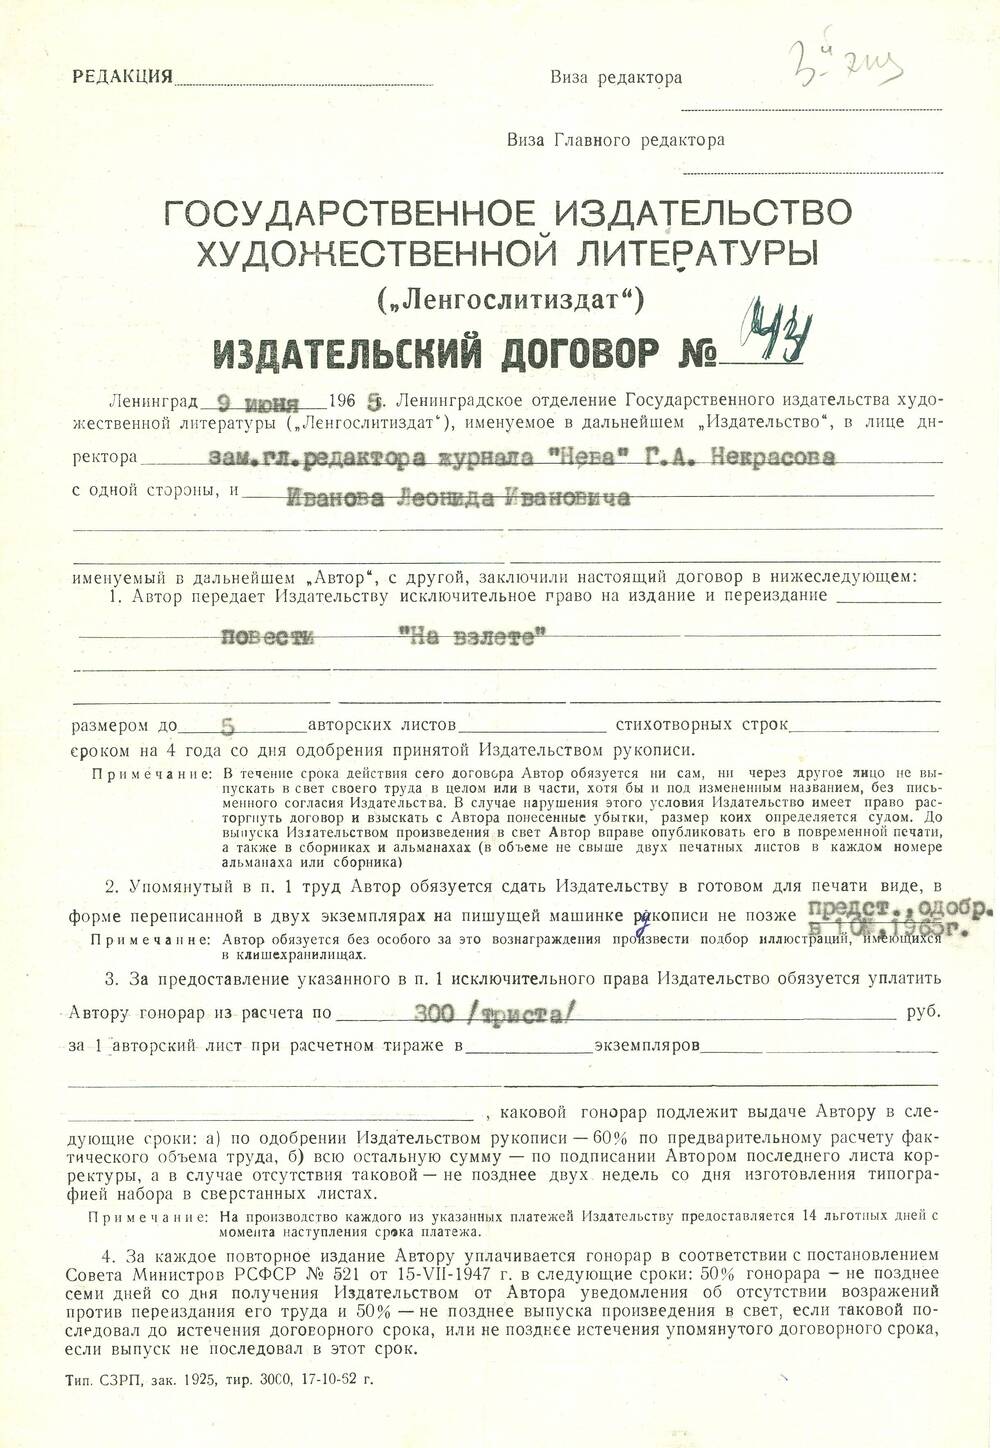 Договор издательский №44 между Ленгослитиздатом и Л. Ивановым